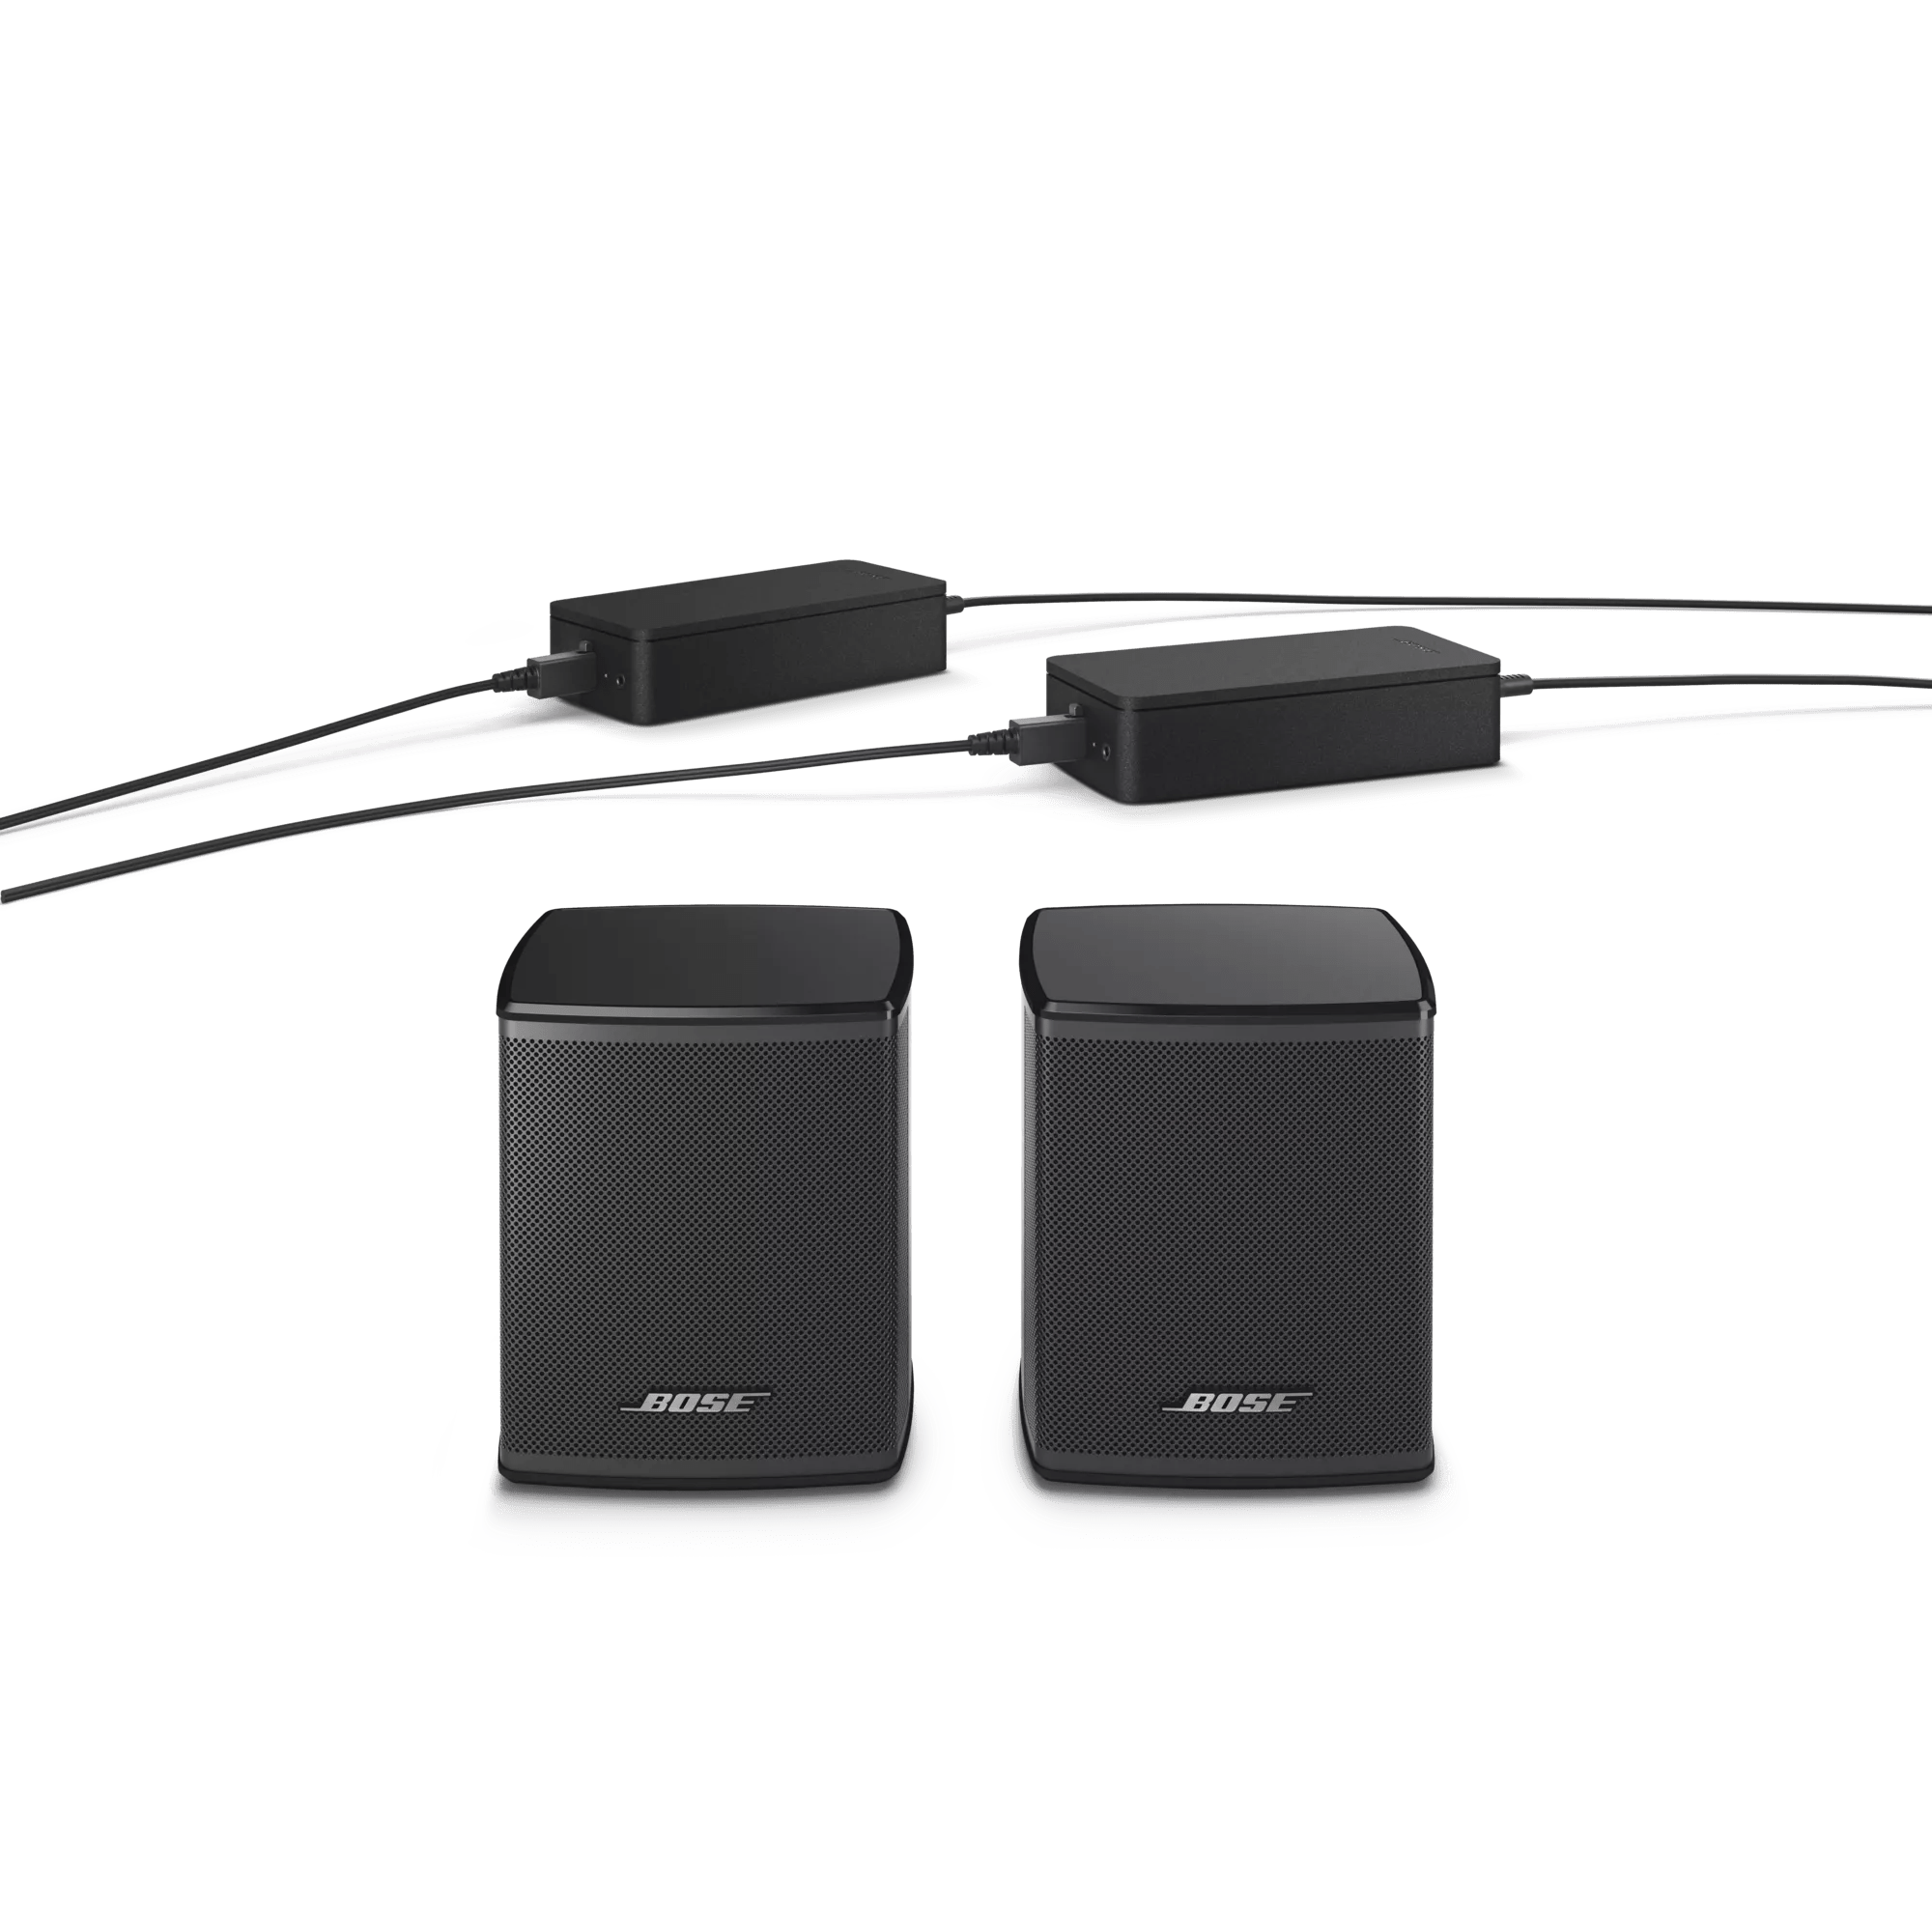 Bose Surround Speakers – Wireless Surround Sound Speakers